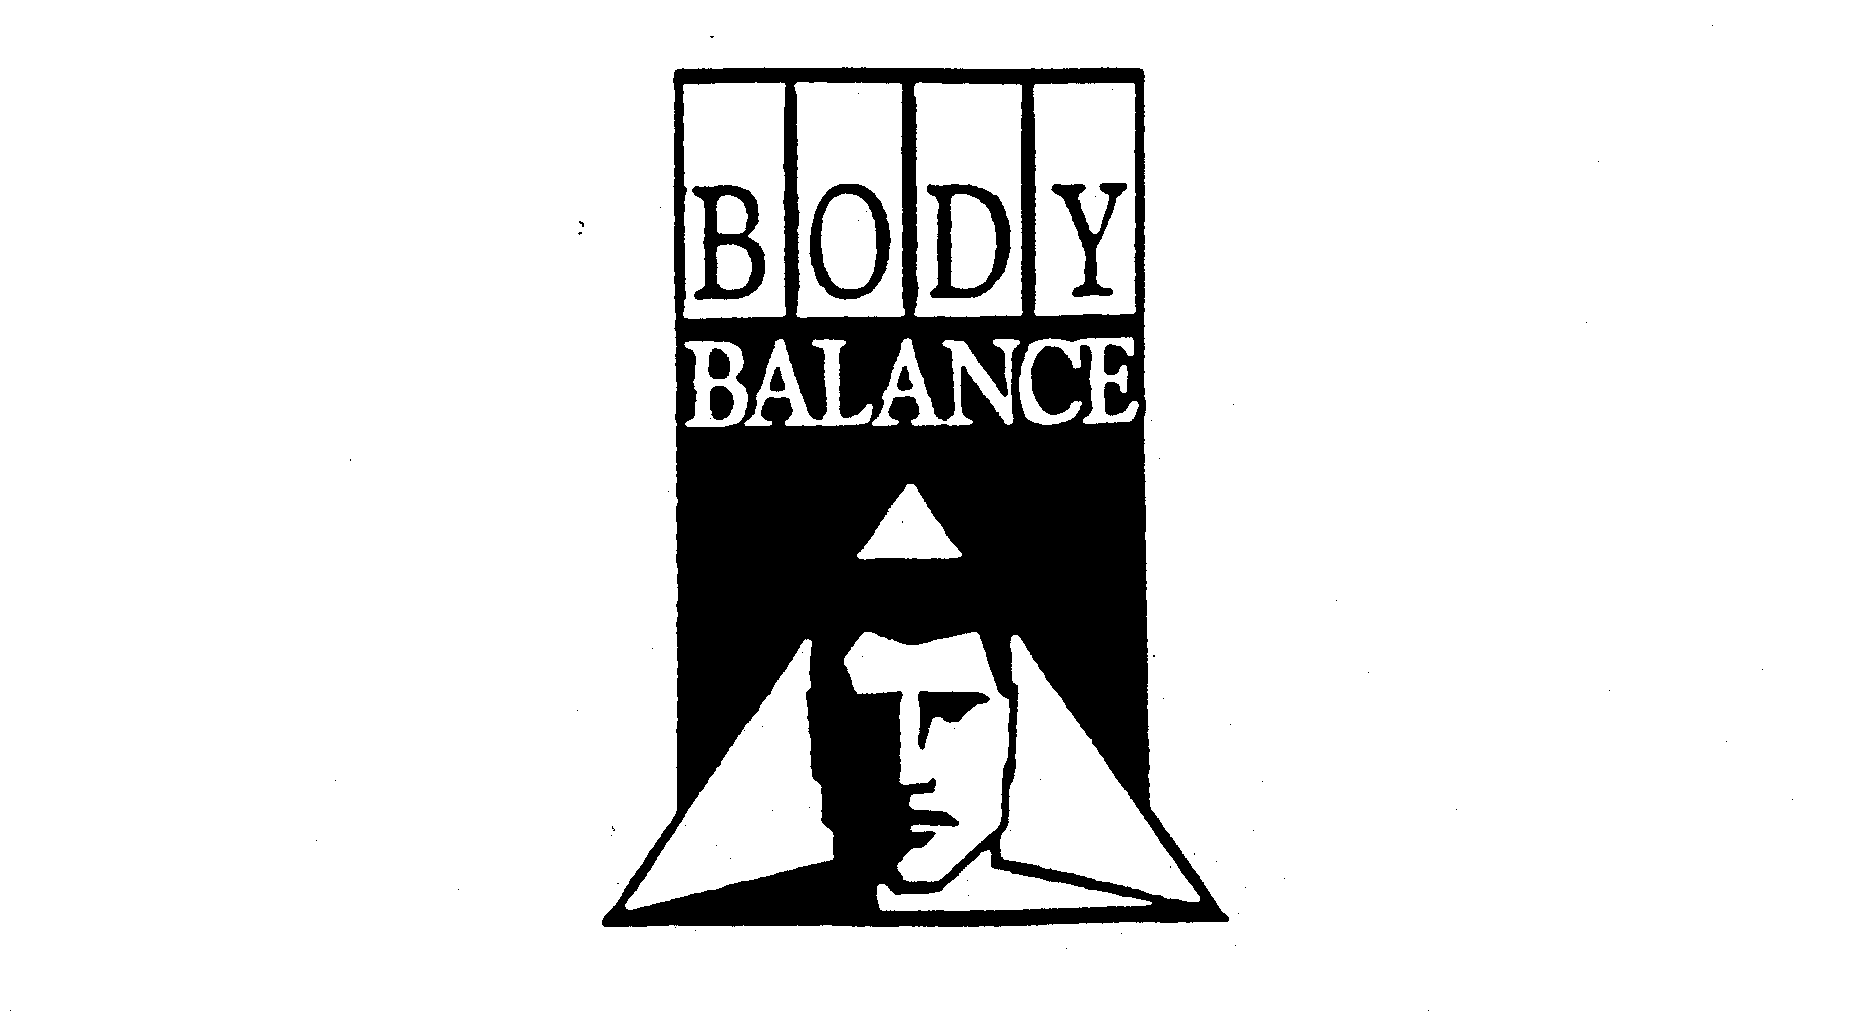 Trademark Logo BODY BALANCE